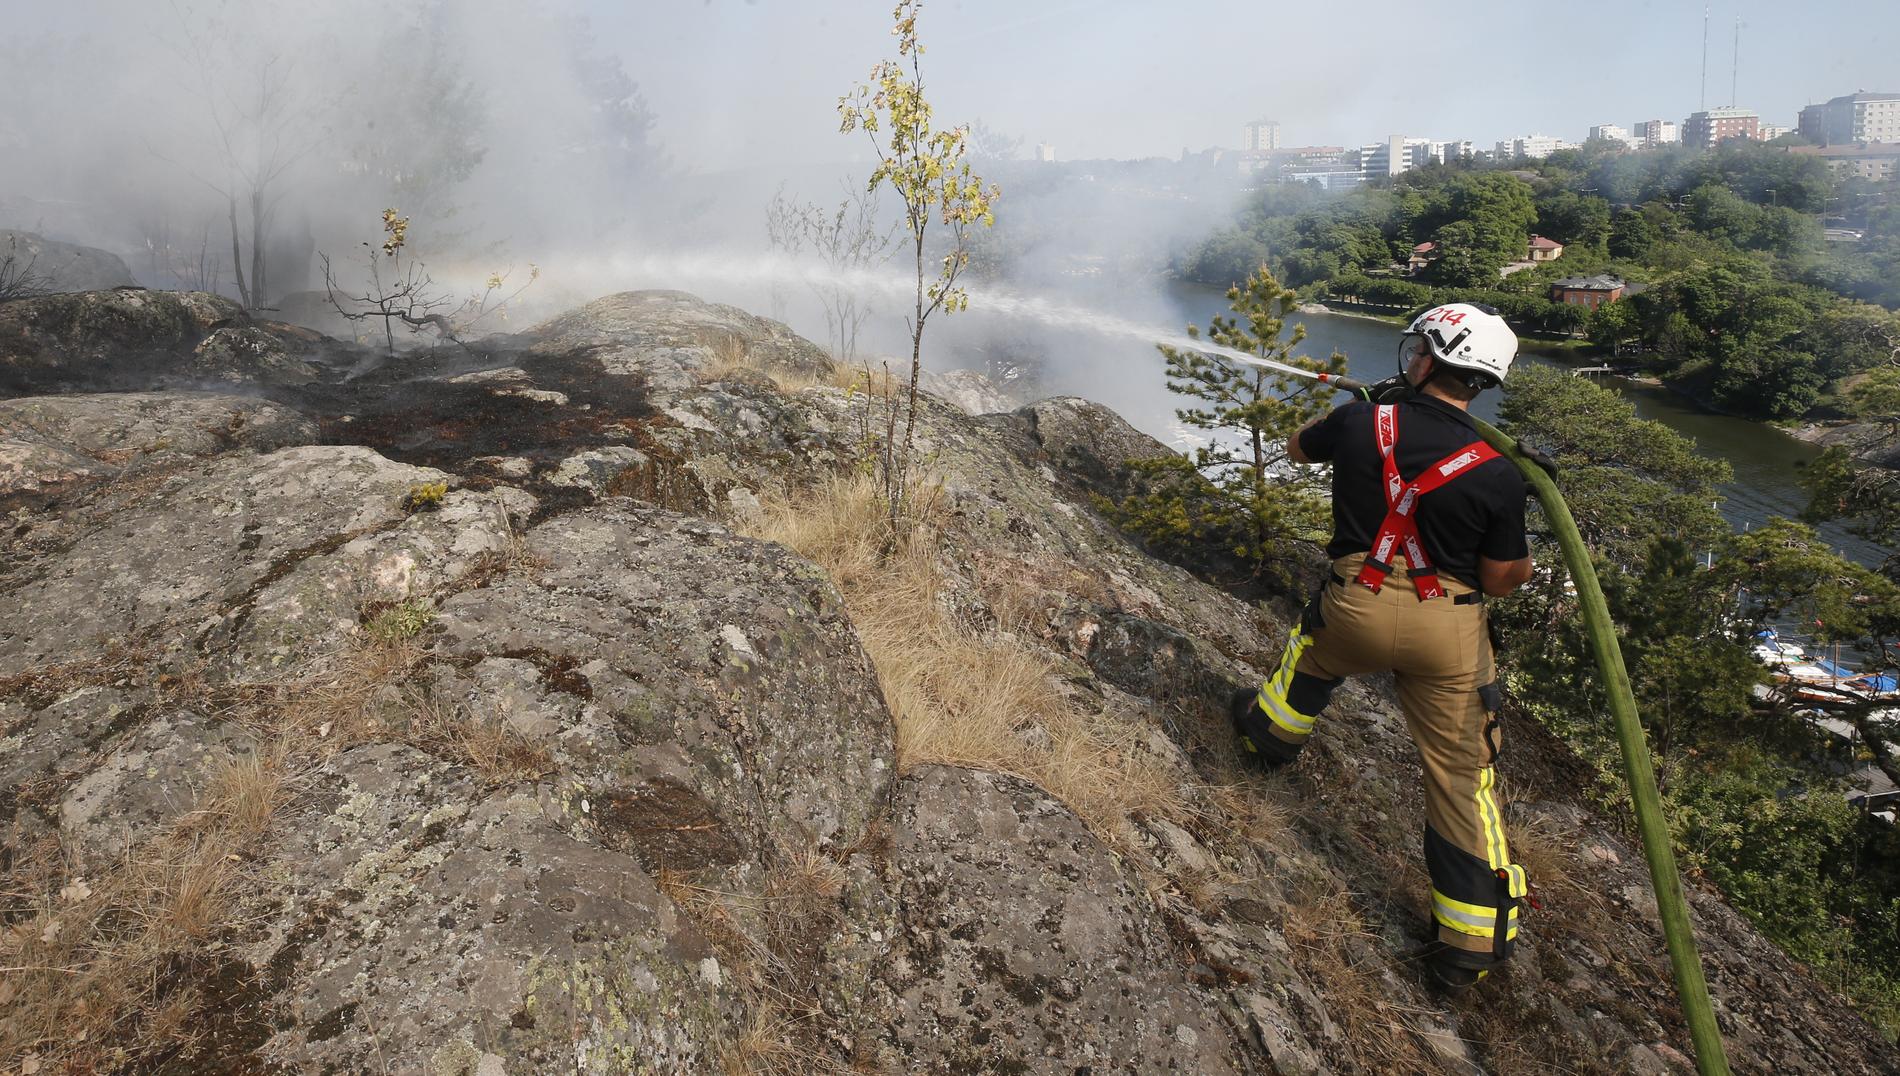 Det är stor brandrisk i hela landet förutom i norra Lapplandsfjällen enligt varningar från SMHI:s. Många platser, bland annat i Värmland, har drabbats skogsbränder som krävt stora släckningsinsatser. Eller som här där brandpersonal bekämpar en skogsbrand i Nacka.